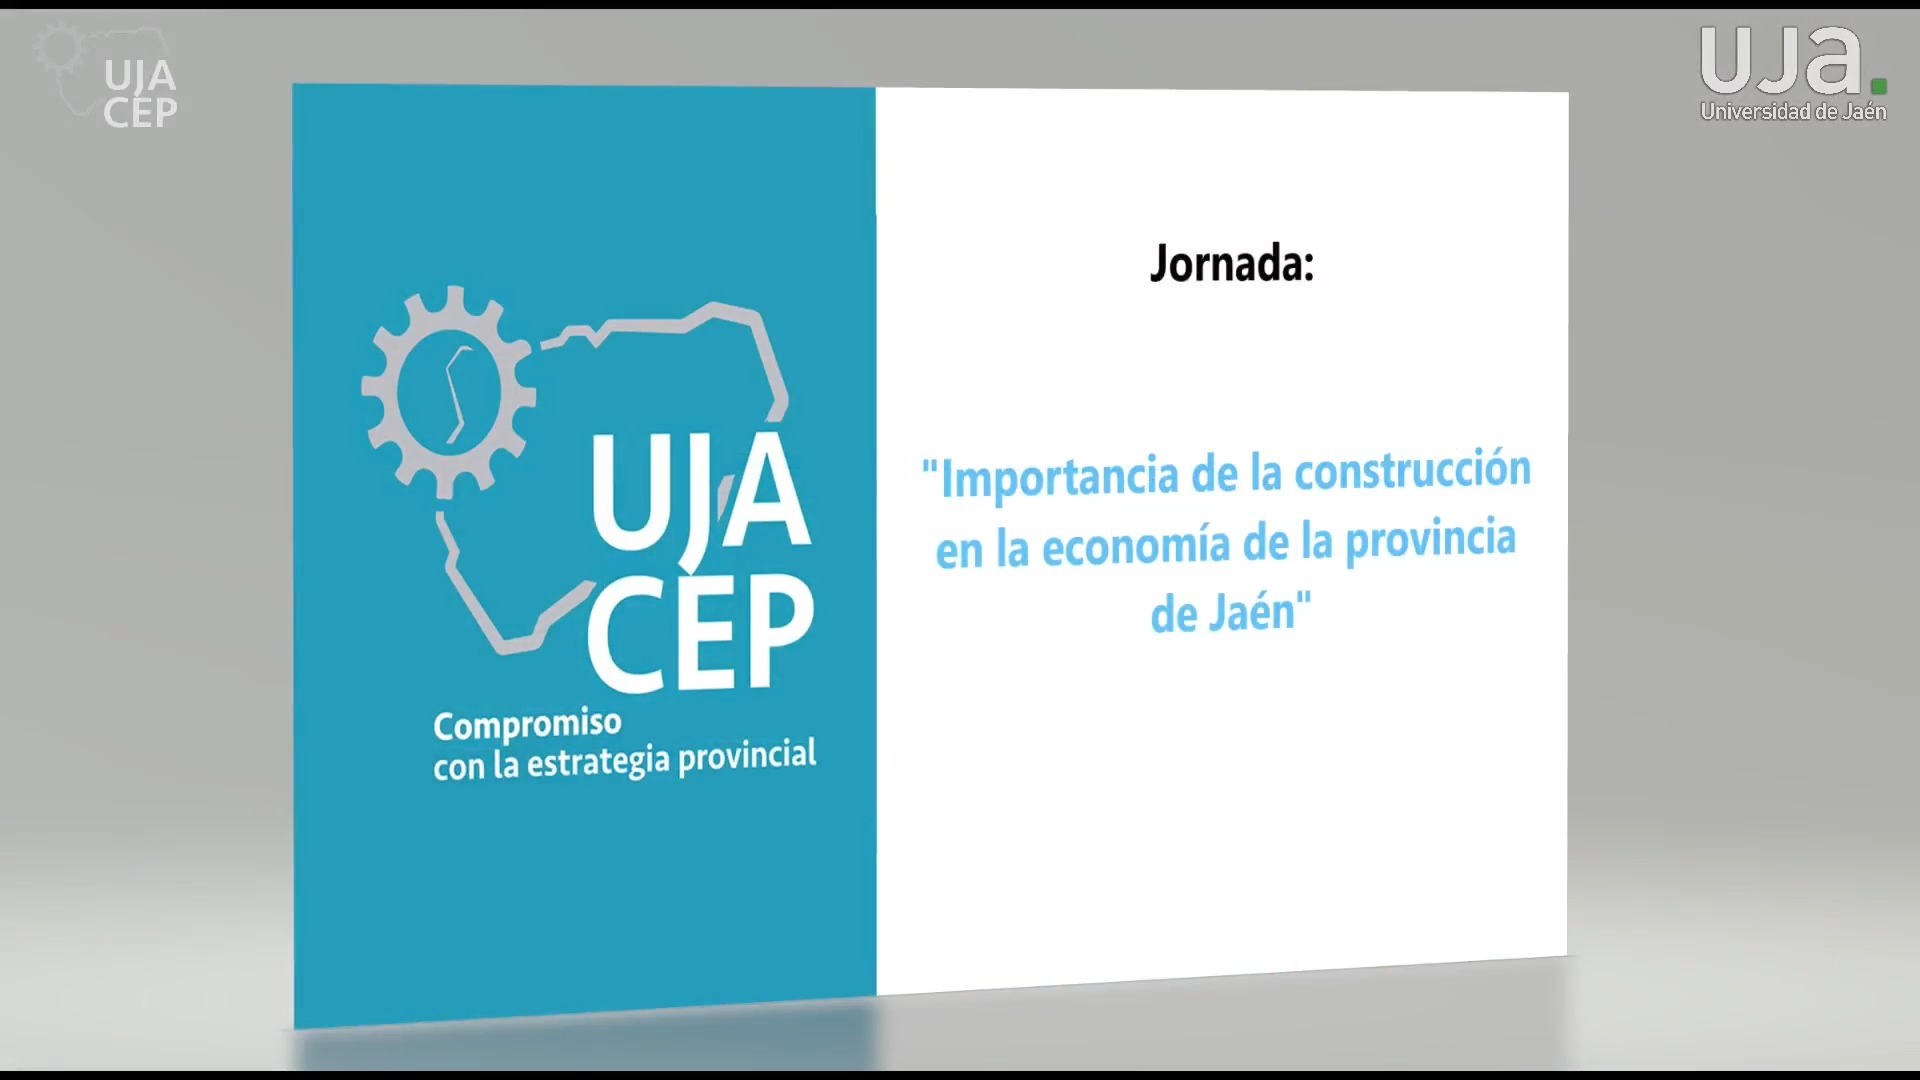 Jornada  “Importancia de la construcción en la economía de la provincia de Jaén"